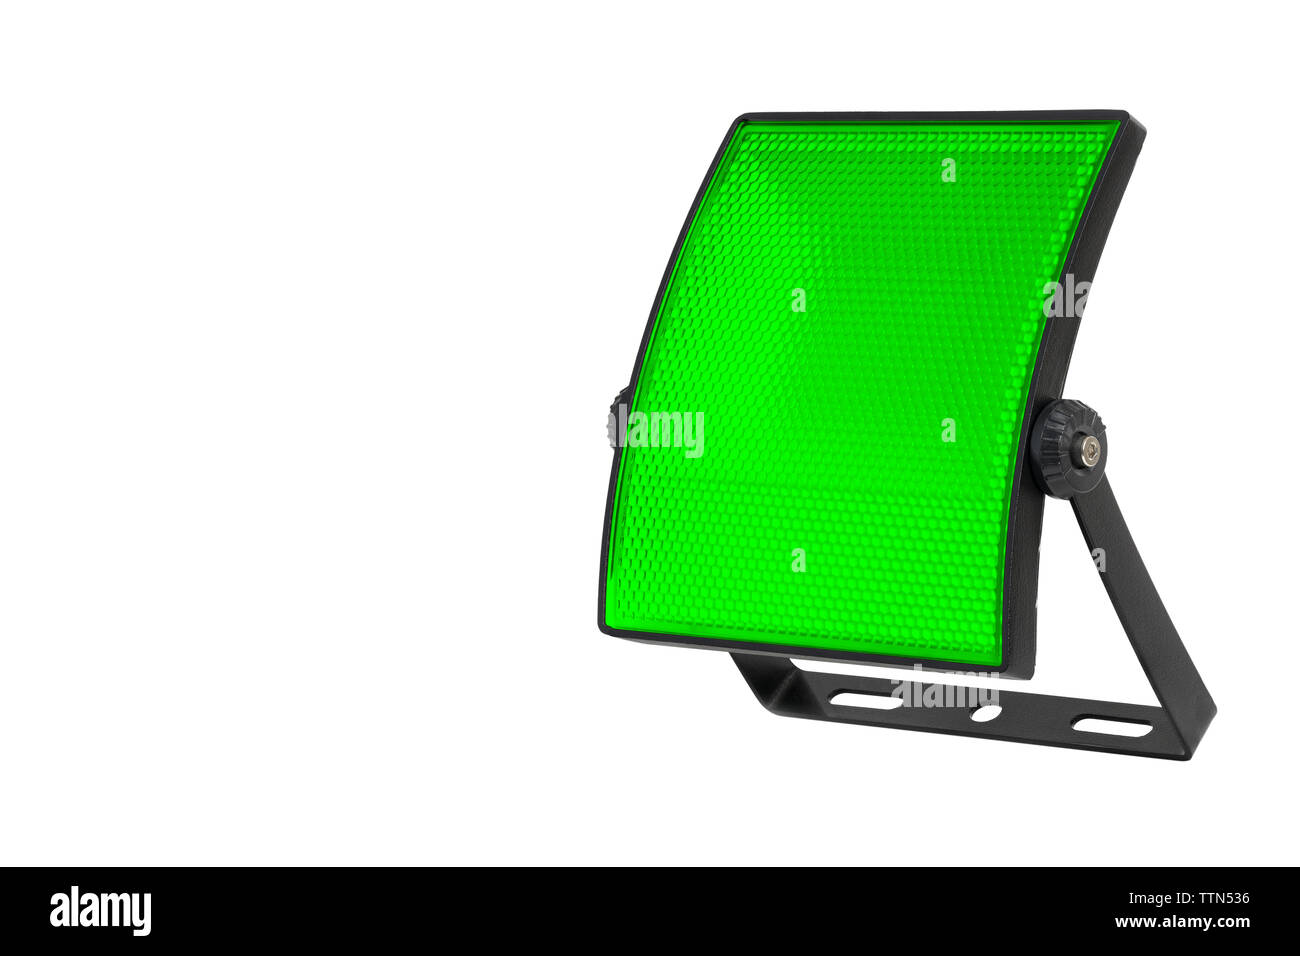 Gebogene LED Spotlight und Halterung auf einem weißen Hintergrund. Grüne Diffusor mit kleinen Zellen. Eine hohe Auflösung. Stockfoto